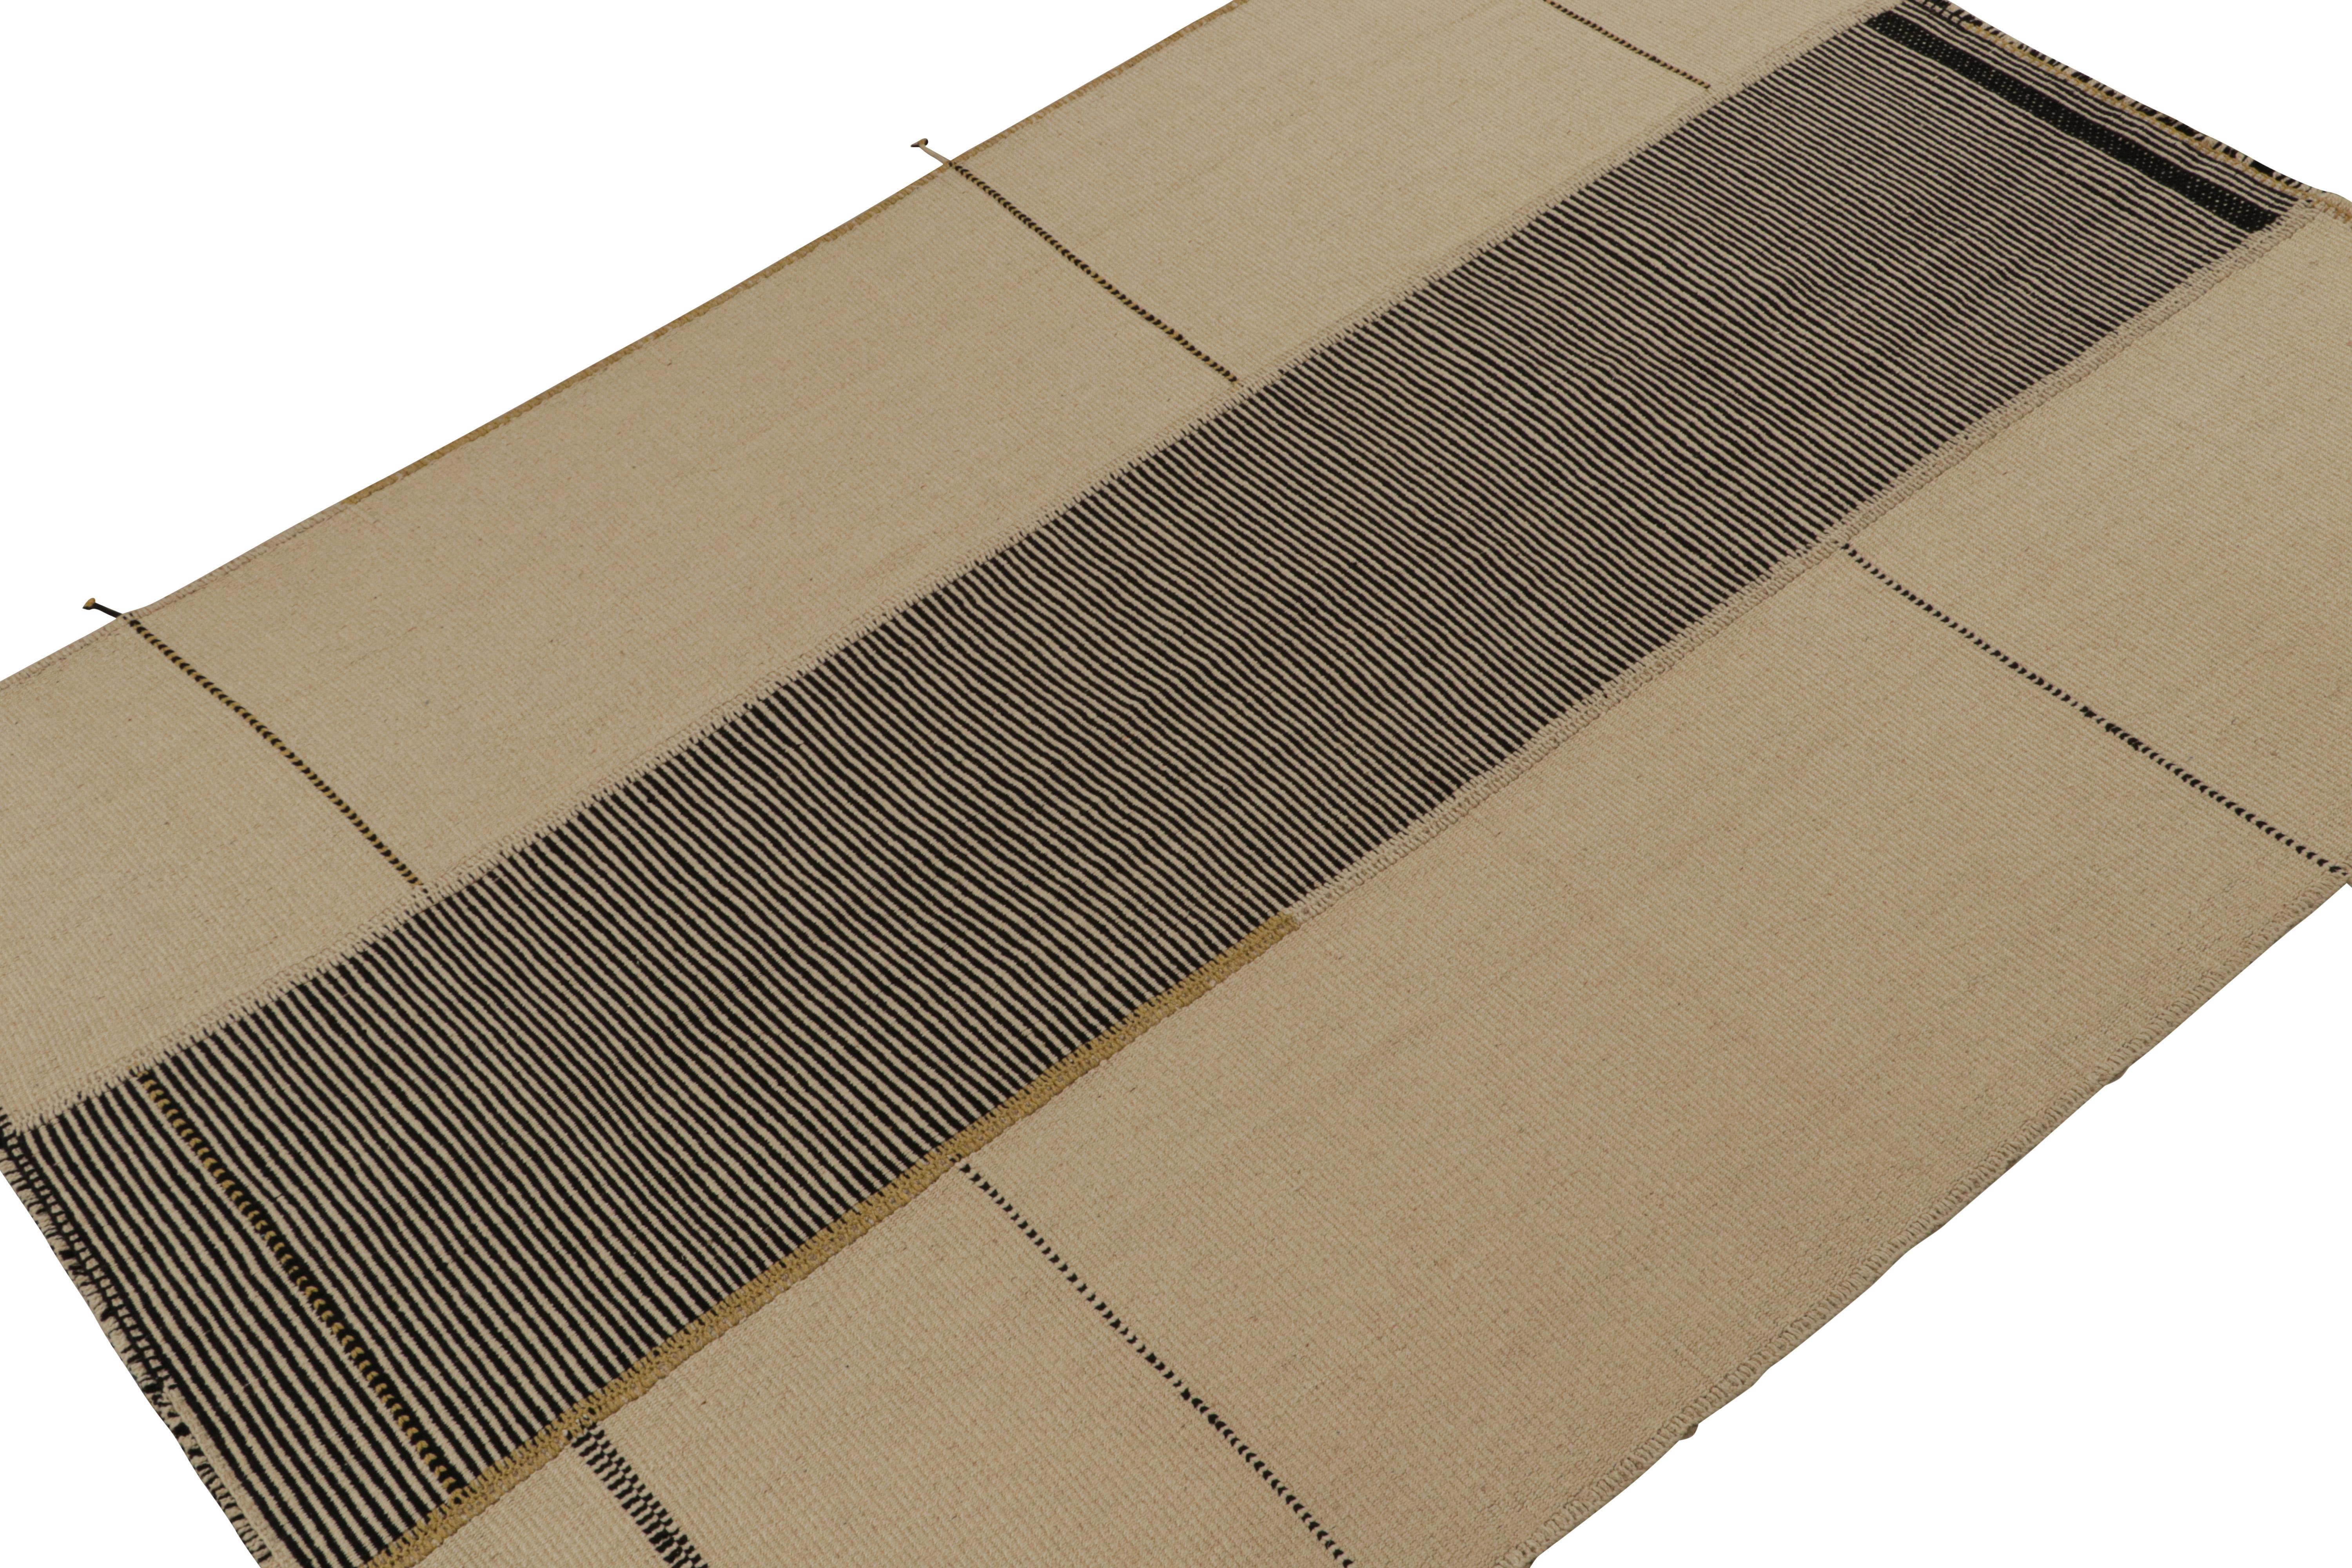 Tissé à la main en laine, ce kilim 7x10 fait partie d'une nouvelle ligne audacieuse de tissages plats contemporains de Rug & Kilim.

Sur le Design : 

Connotant une version moderne du tissage de panneaux classique, notre dernier 